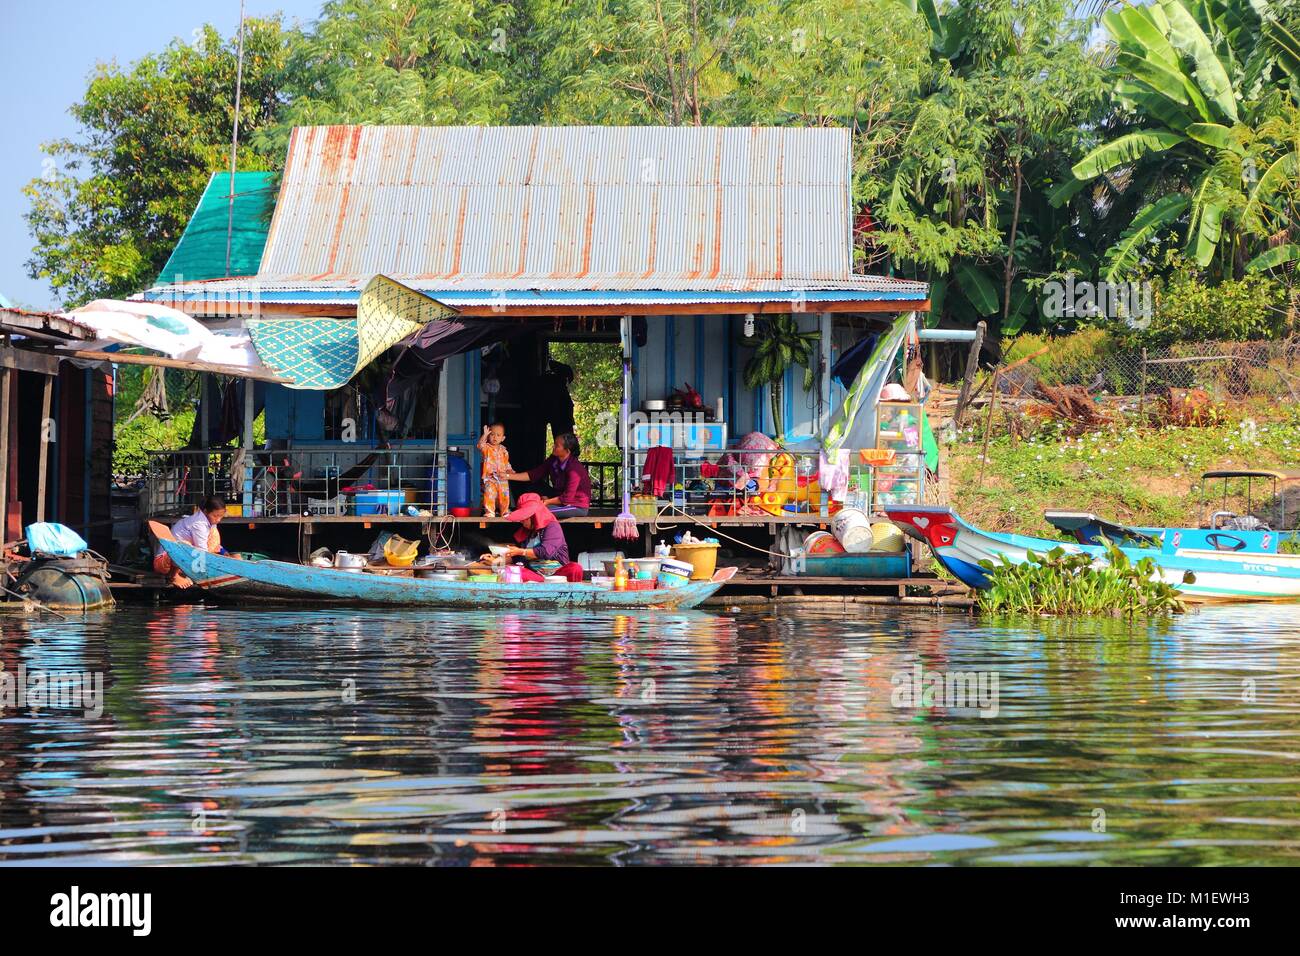 Il Tonle Sap, Cambogia - Dicembre 11, 2013: persone non identificate andare circa la loro vita quotidiana nel villaggio galleggiante sul lago Tonle Sap. È il più grande lago i Foto Stock